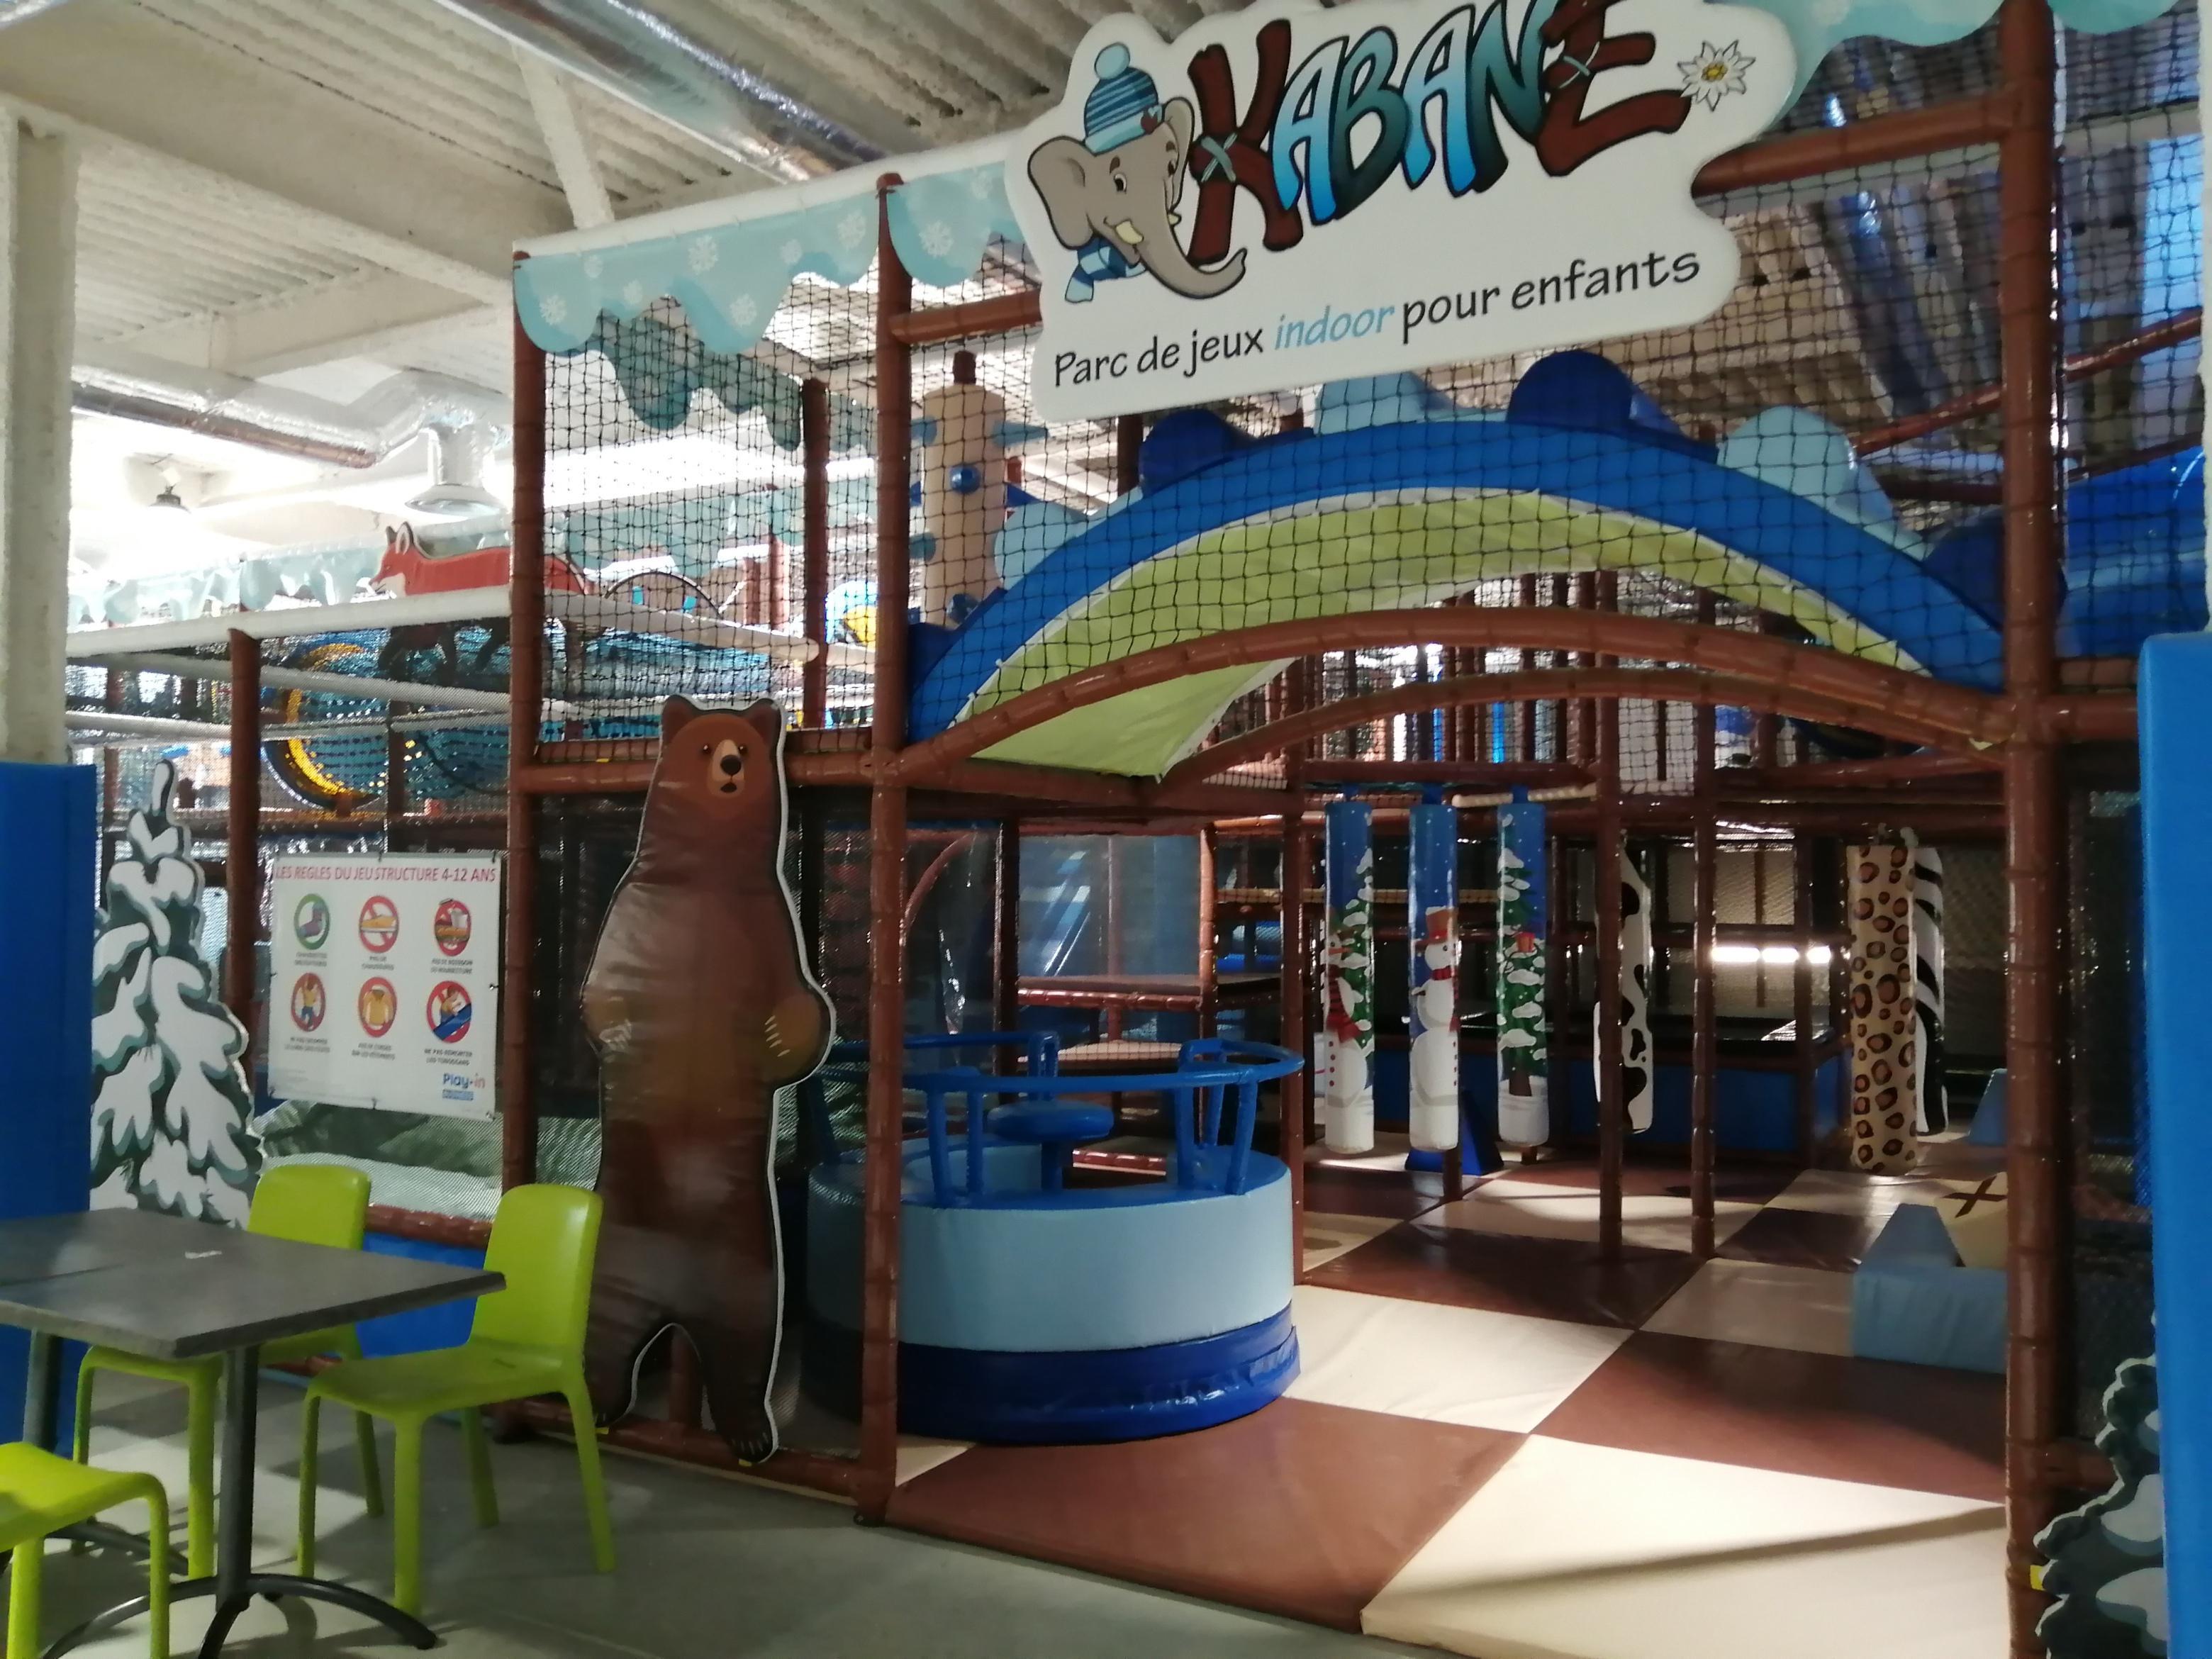 Katapult : 1000 m2 de trampolines pour s’amuser en jumpant